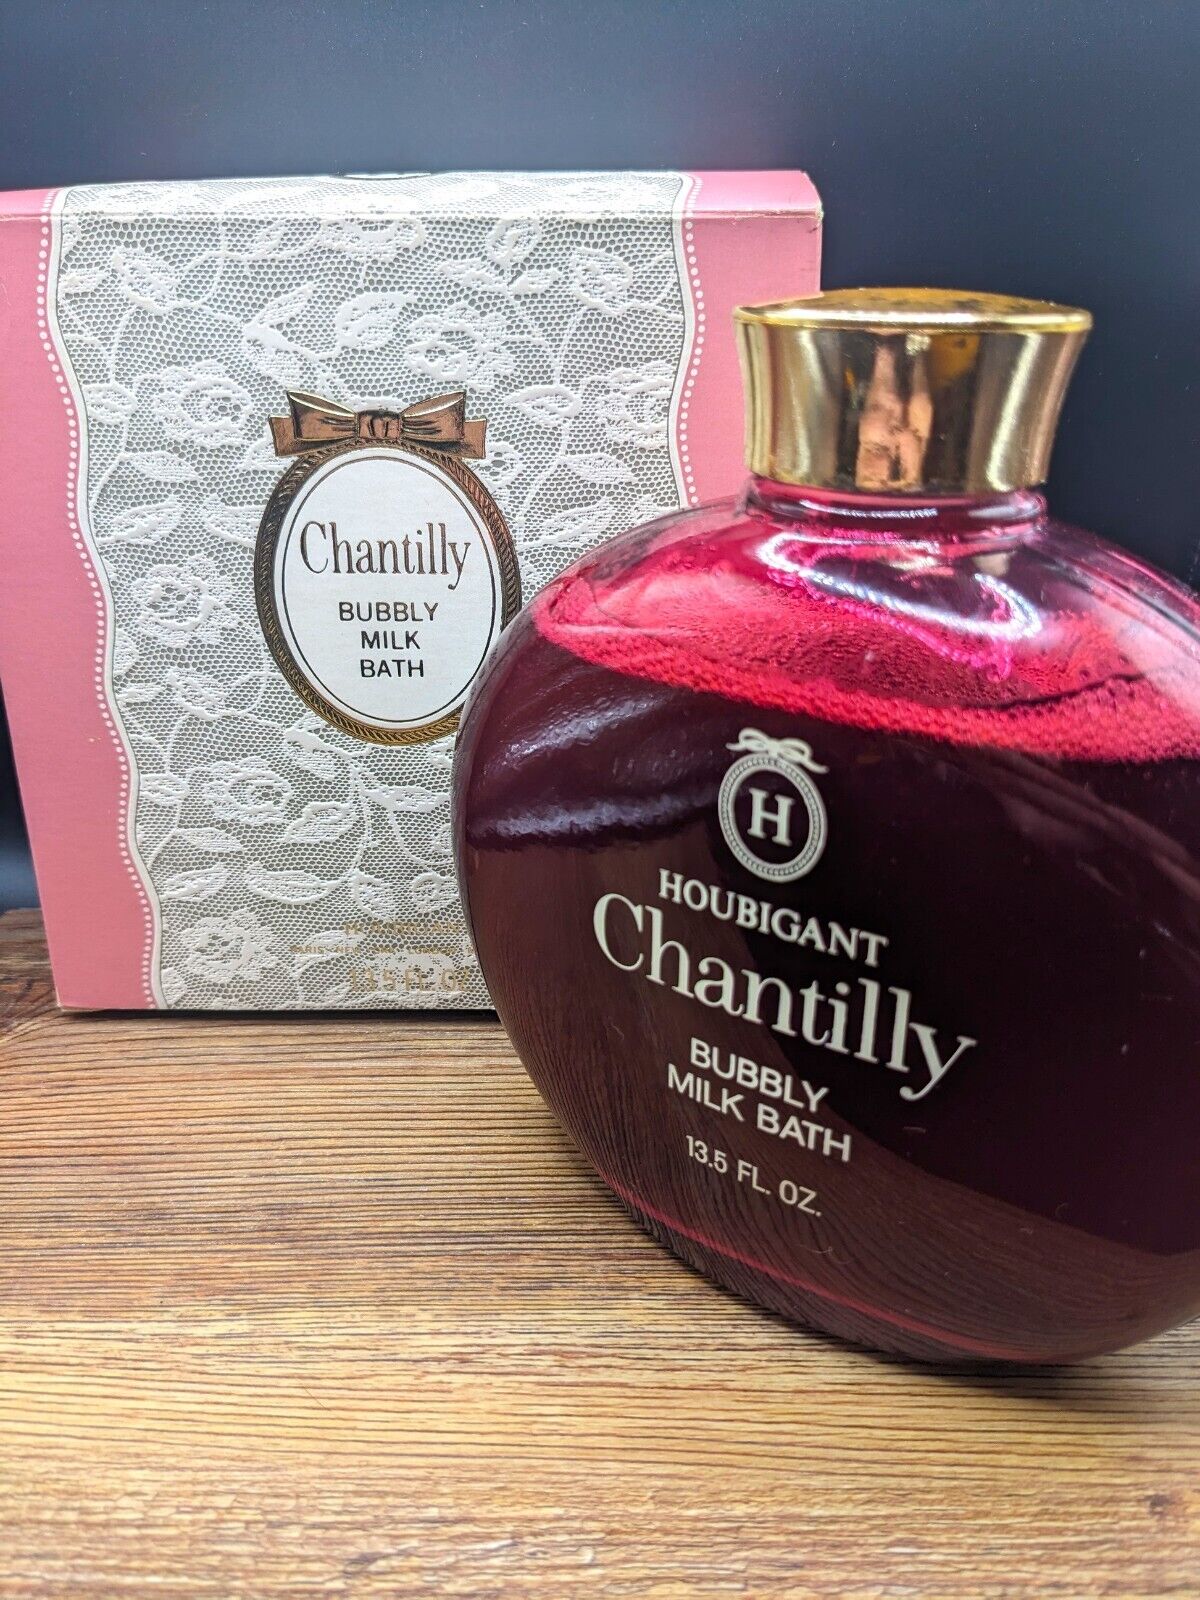 Vintage Chantilly by Houbigant Bubbly Milk Bath 13.5 FL Oz